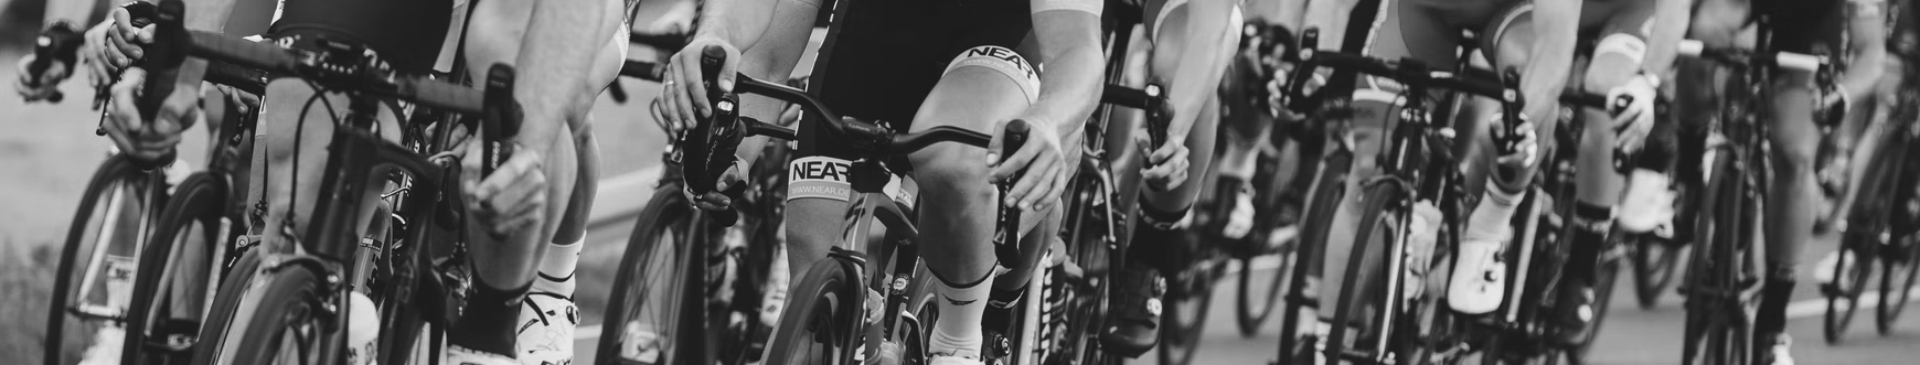 Cycling/Triathlete